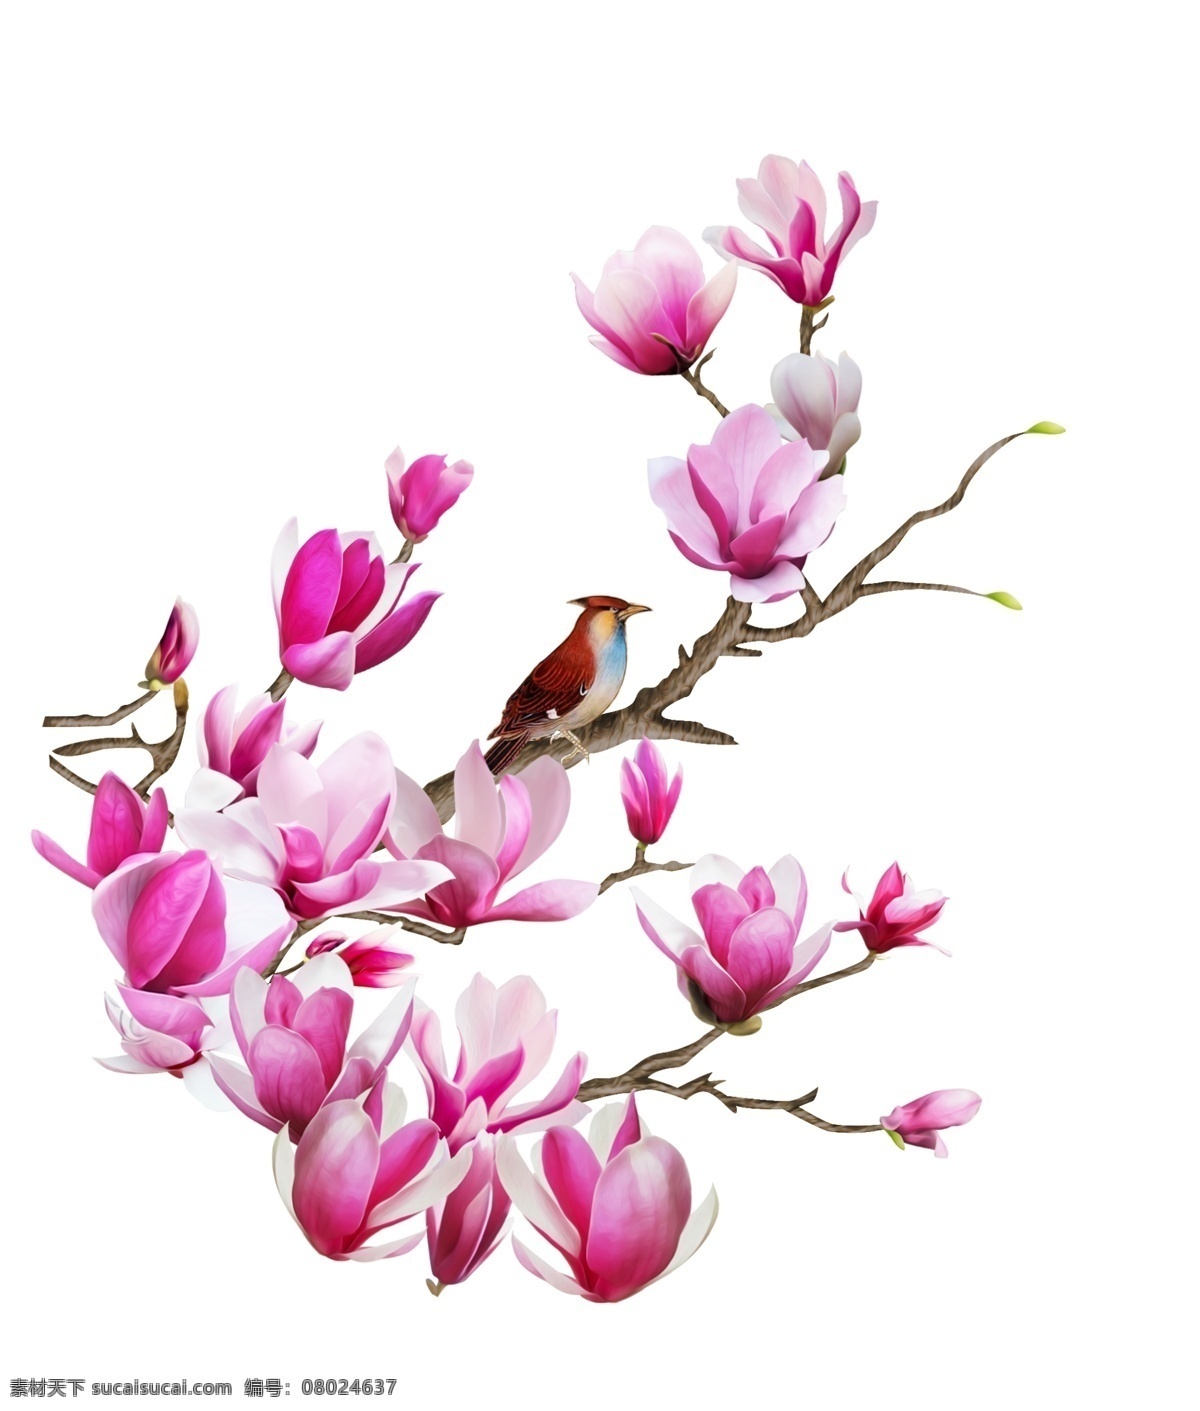 玉兰 玉兰花 鸟 插图 背景 天空 开花 玉兰树 花卉 绽放 盛开 花枝 花朵 粉红色 红玉兰 自然景观 人文景观